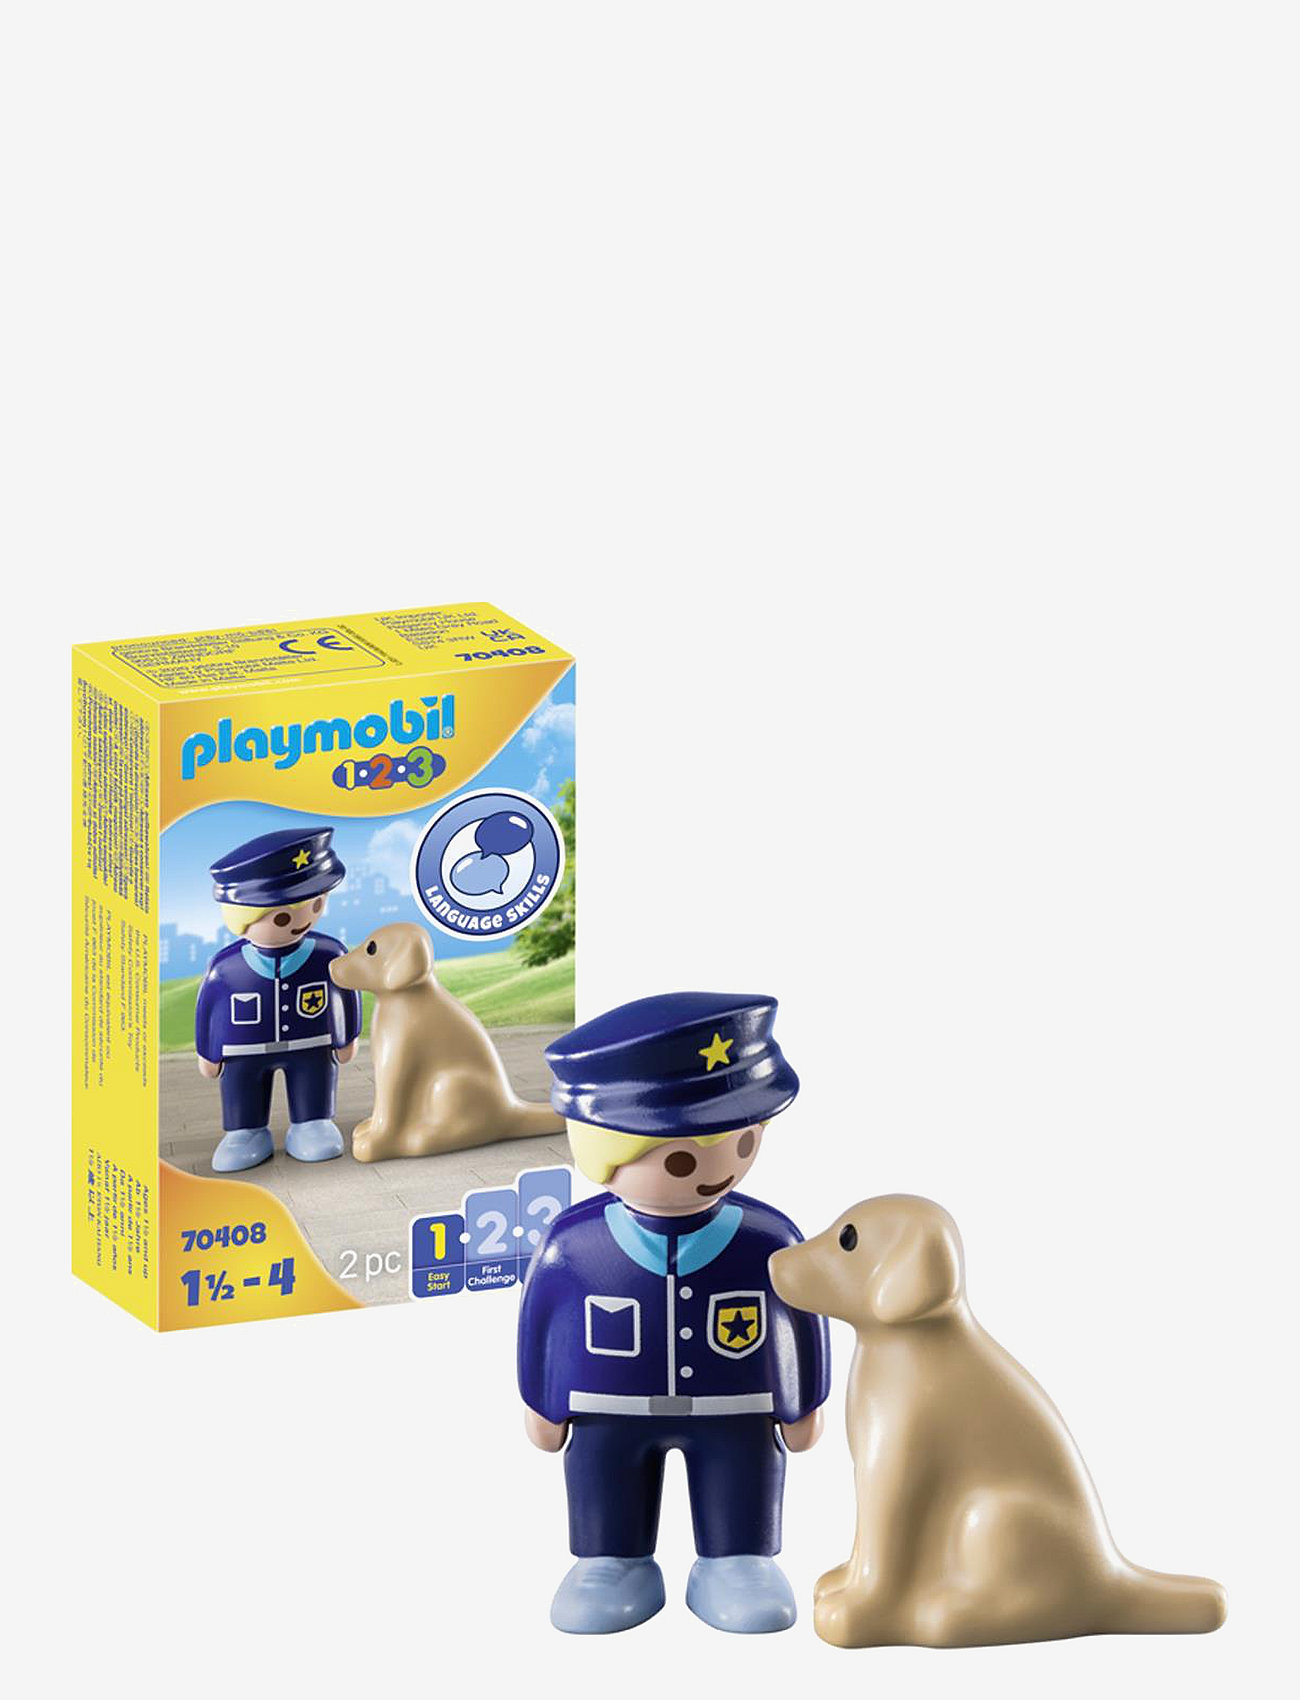 PLAYMOBIL - PLAYMOBIL 1.2.3 Polis med hund - 70408 - playmobil 1.2.3 - multicolored - 0